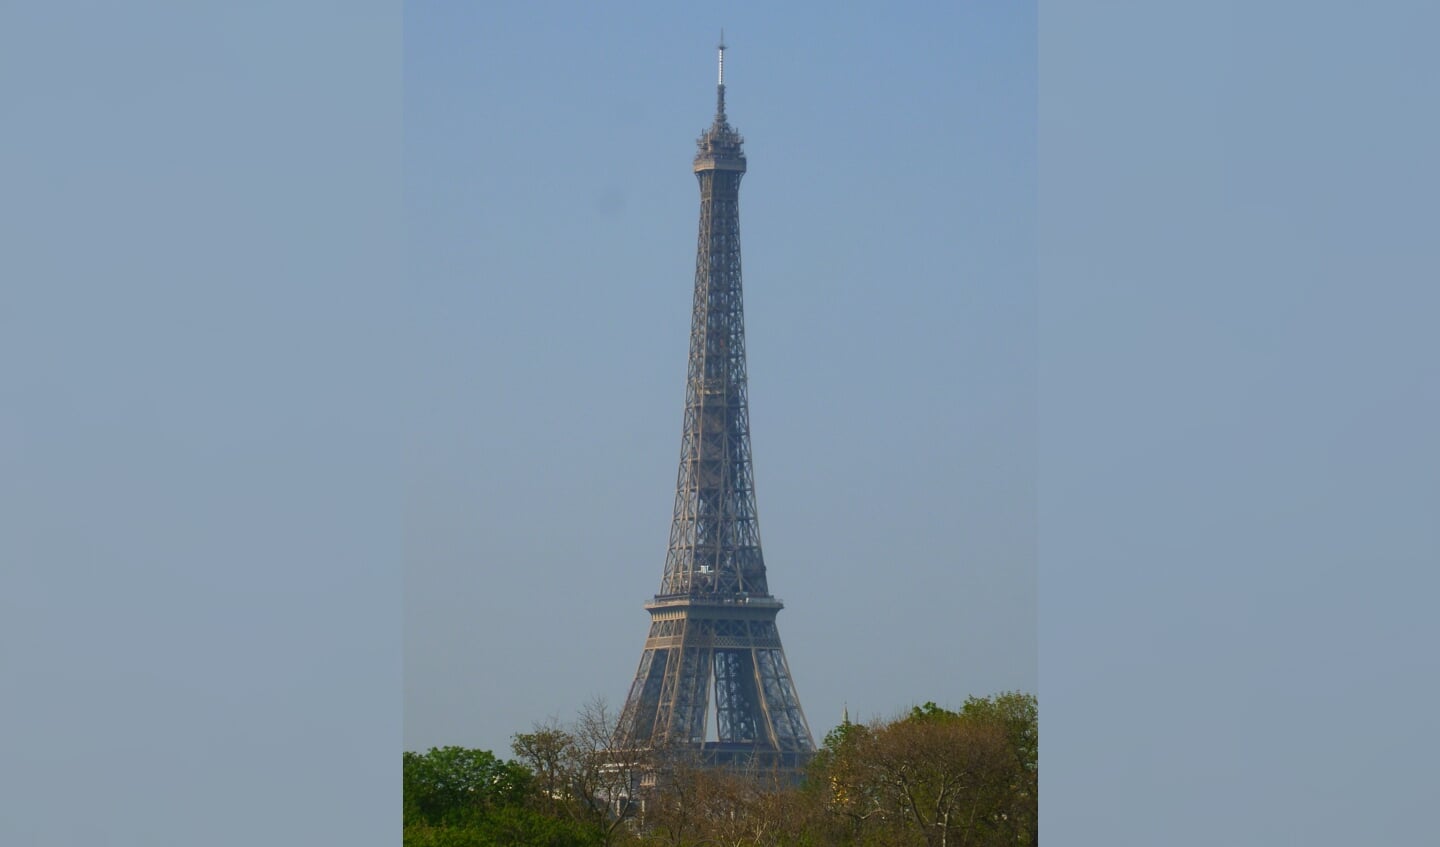 In de Eiffeltoren bevindt zich het wereldberoemde restaurant Le Jules Verne waar de Franse President Emmanuel Macron, zijn vrouw Brigitte, de Amerikaanse President Donald Trump en diens echtgenote Melania in 2018 gezellig met elkaar hebben gedineerd.